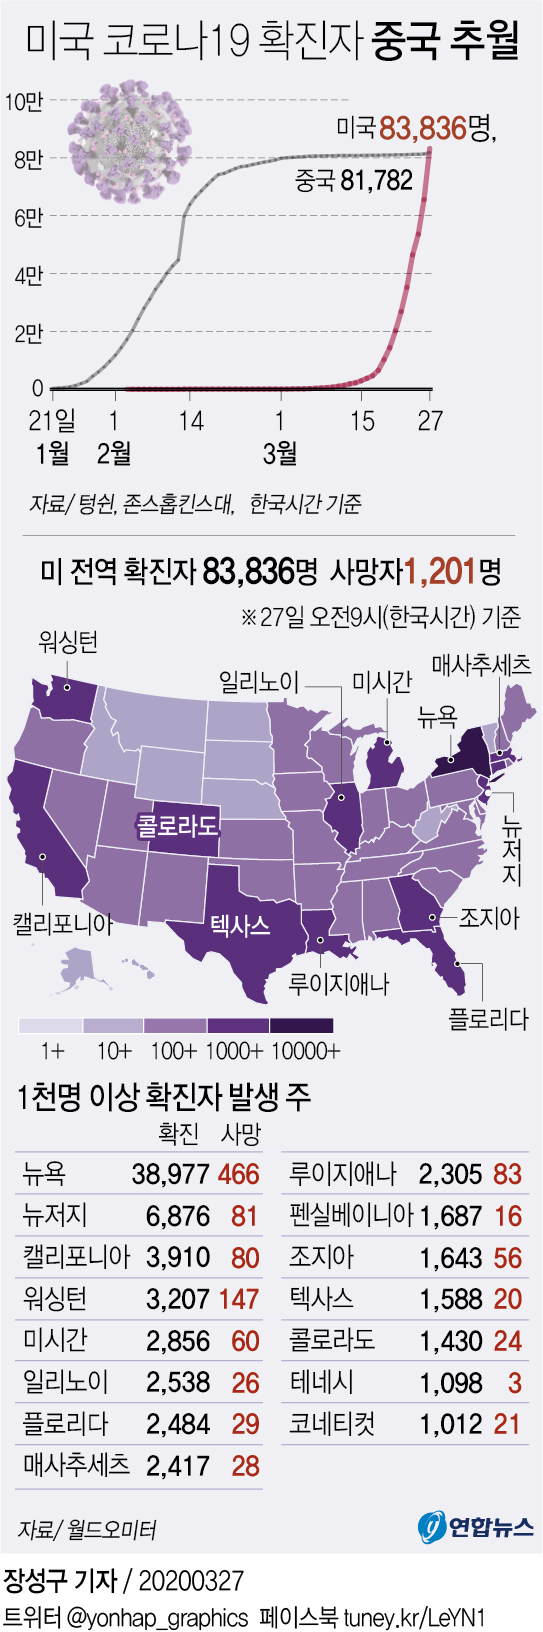 [그래픽] 미국 코로나19 확진자 수 중국 추월